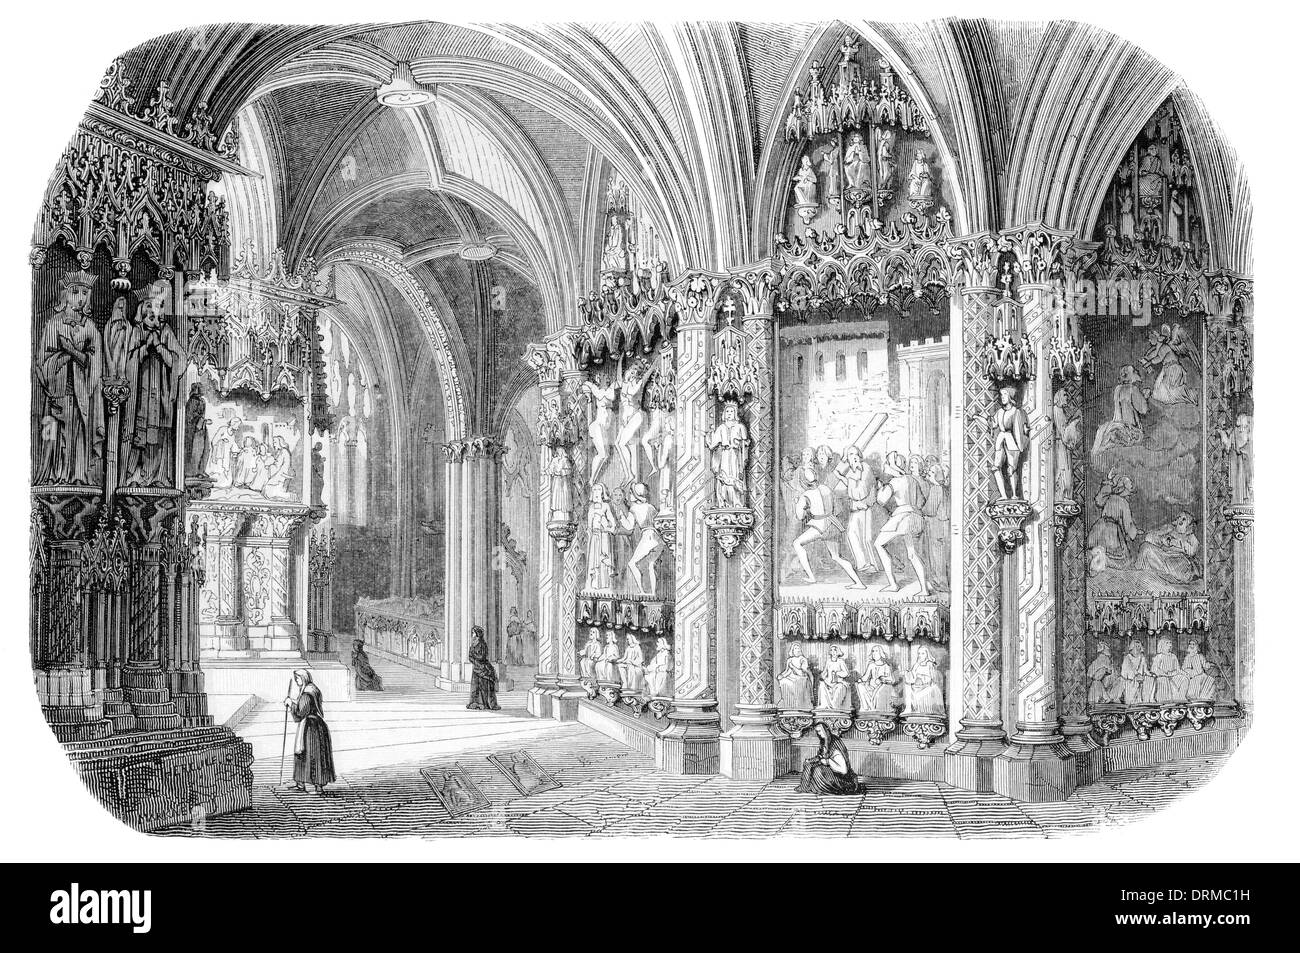 Interno Cattedrale di Burgos Catedral de Burgos stile gotico a Cattedrale cattolica romana a Burgos, Spagna. circa 1848 Foto Stock